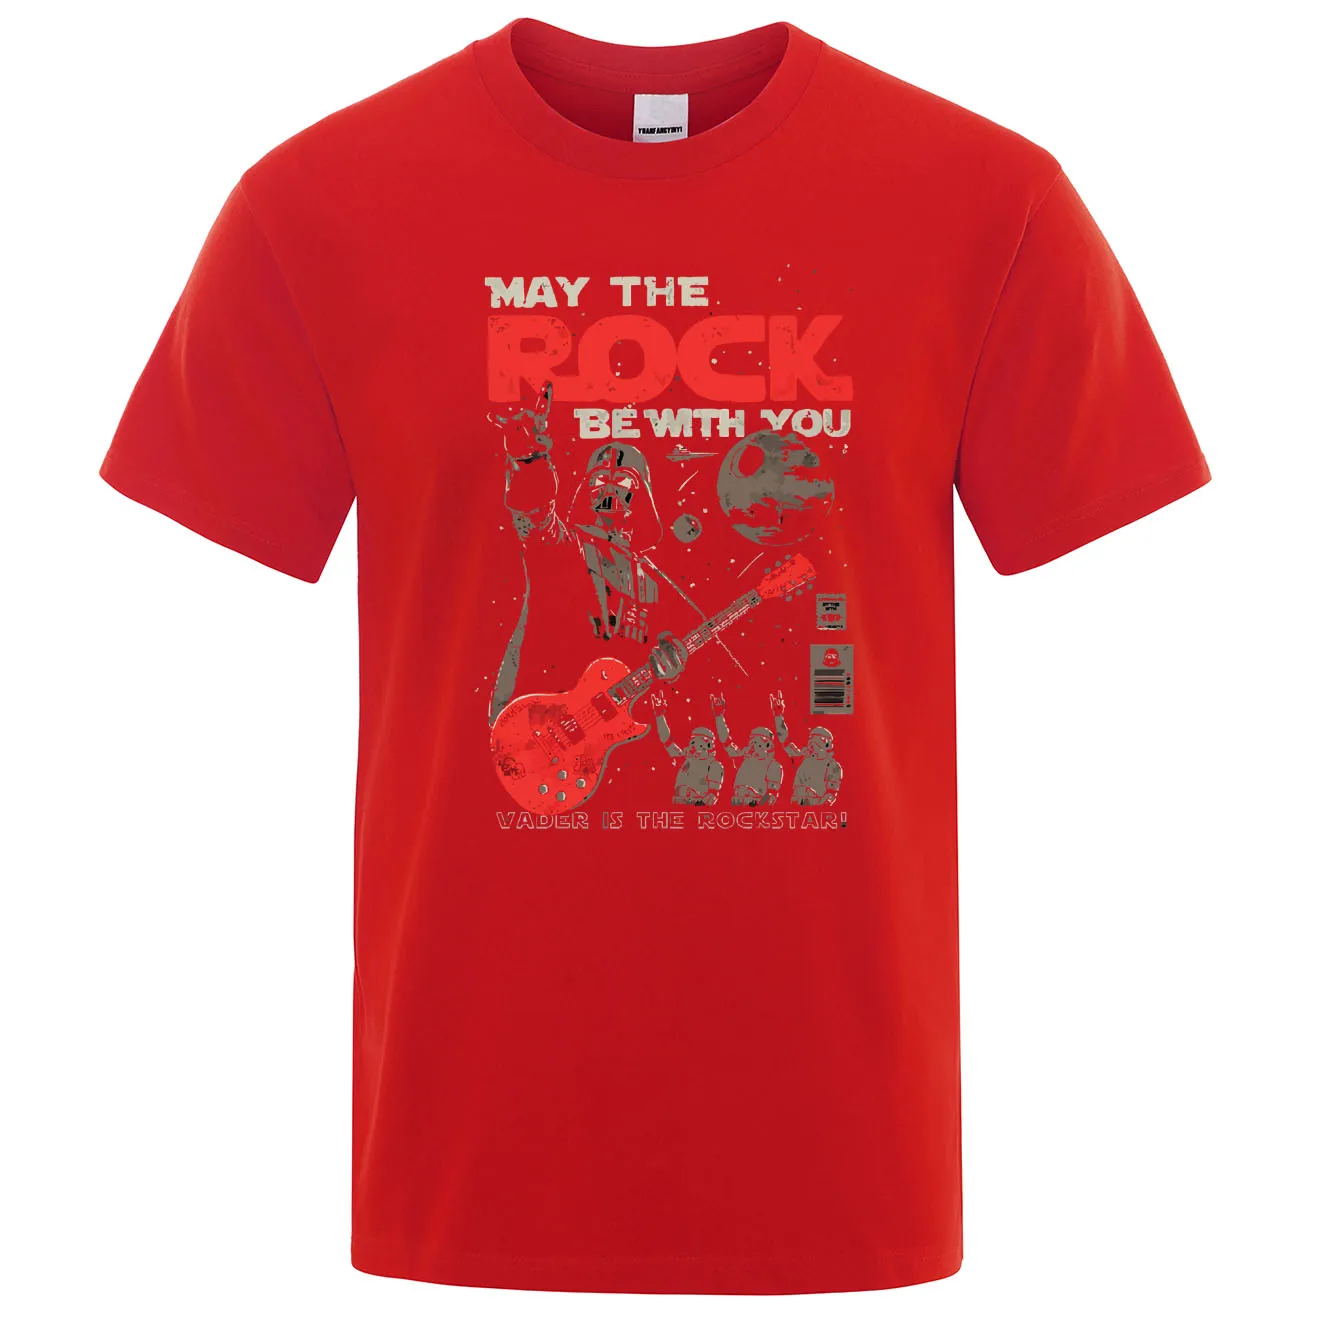 Мэй рок быть с вами Футболка с принтом Звездные войны хип-хоп Мужская футболка Мода лето хлопок высокое качество реглан мужские топы s